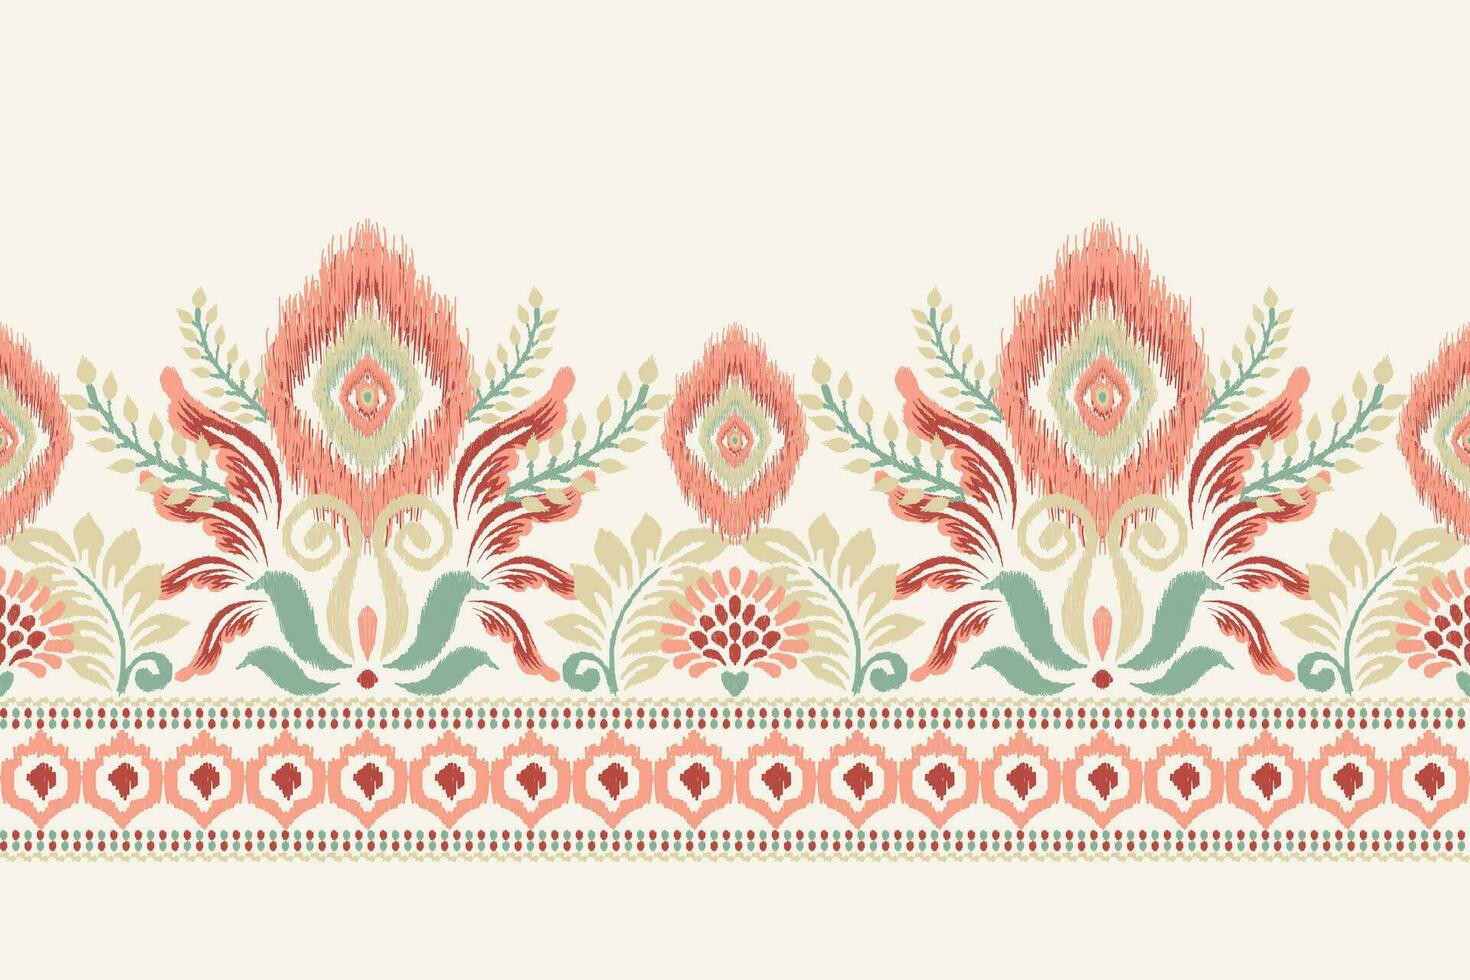 ikat floral paisley bordado em branco plano de fundo.ikat étnico oriental padronizar tradicional.asteca estilo abstrato vetor ilustração.design para textura,tecido,vestuário,embrulho,decoração,canga,cachecol